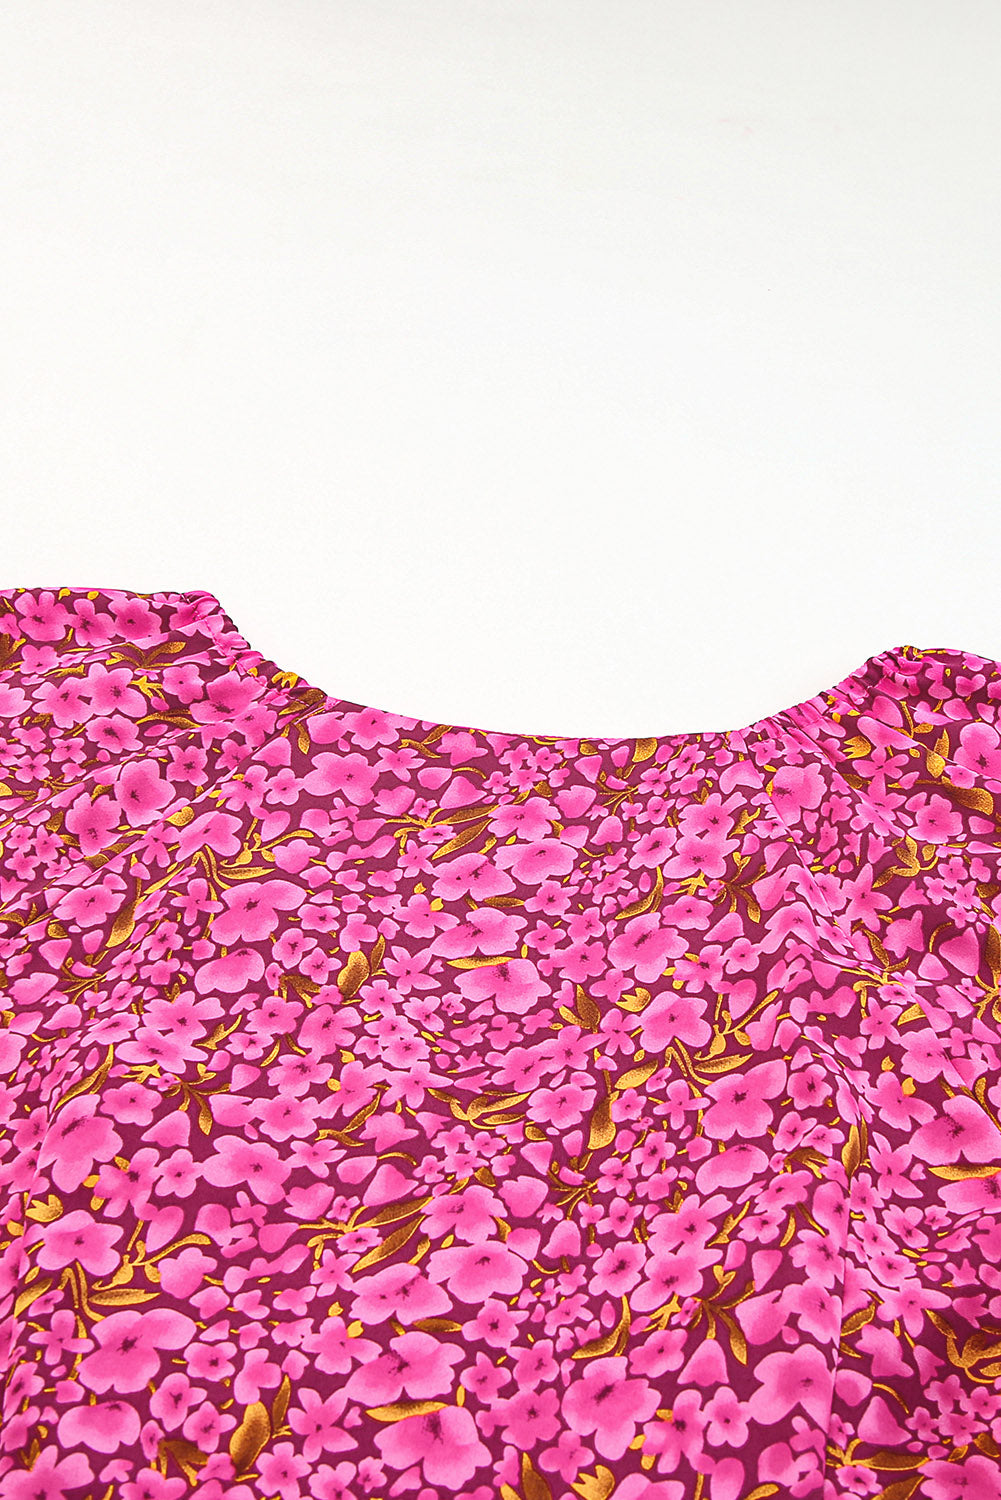 Mini-robe babydoll à manches bouffantes et imprimé floral rose